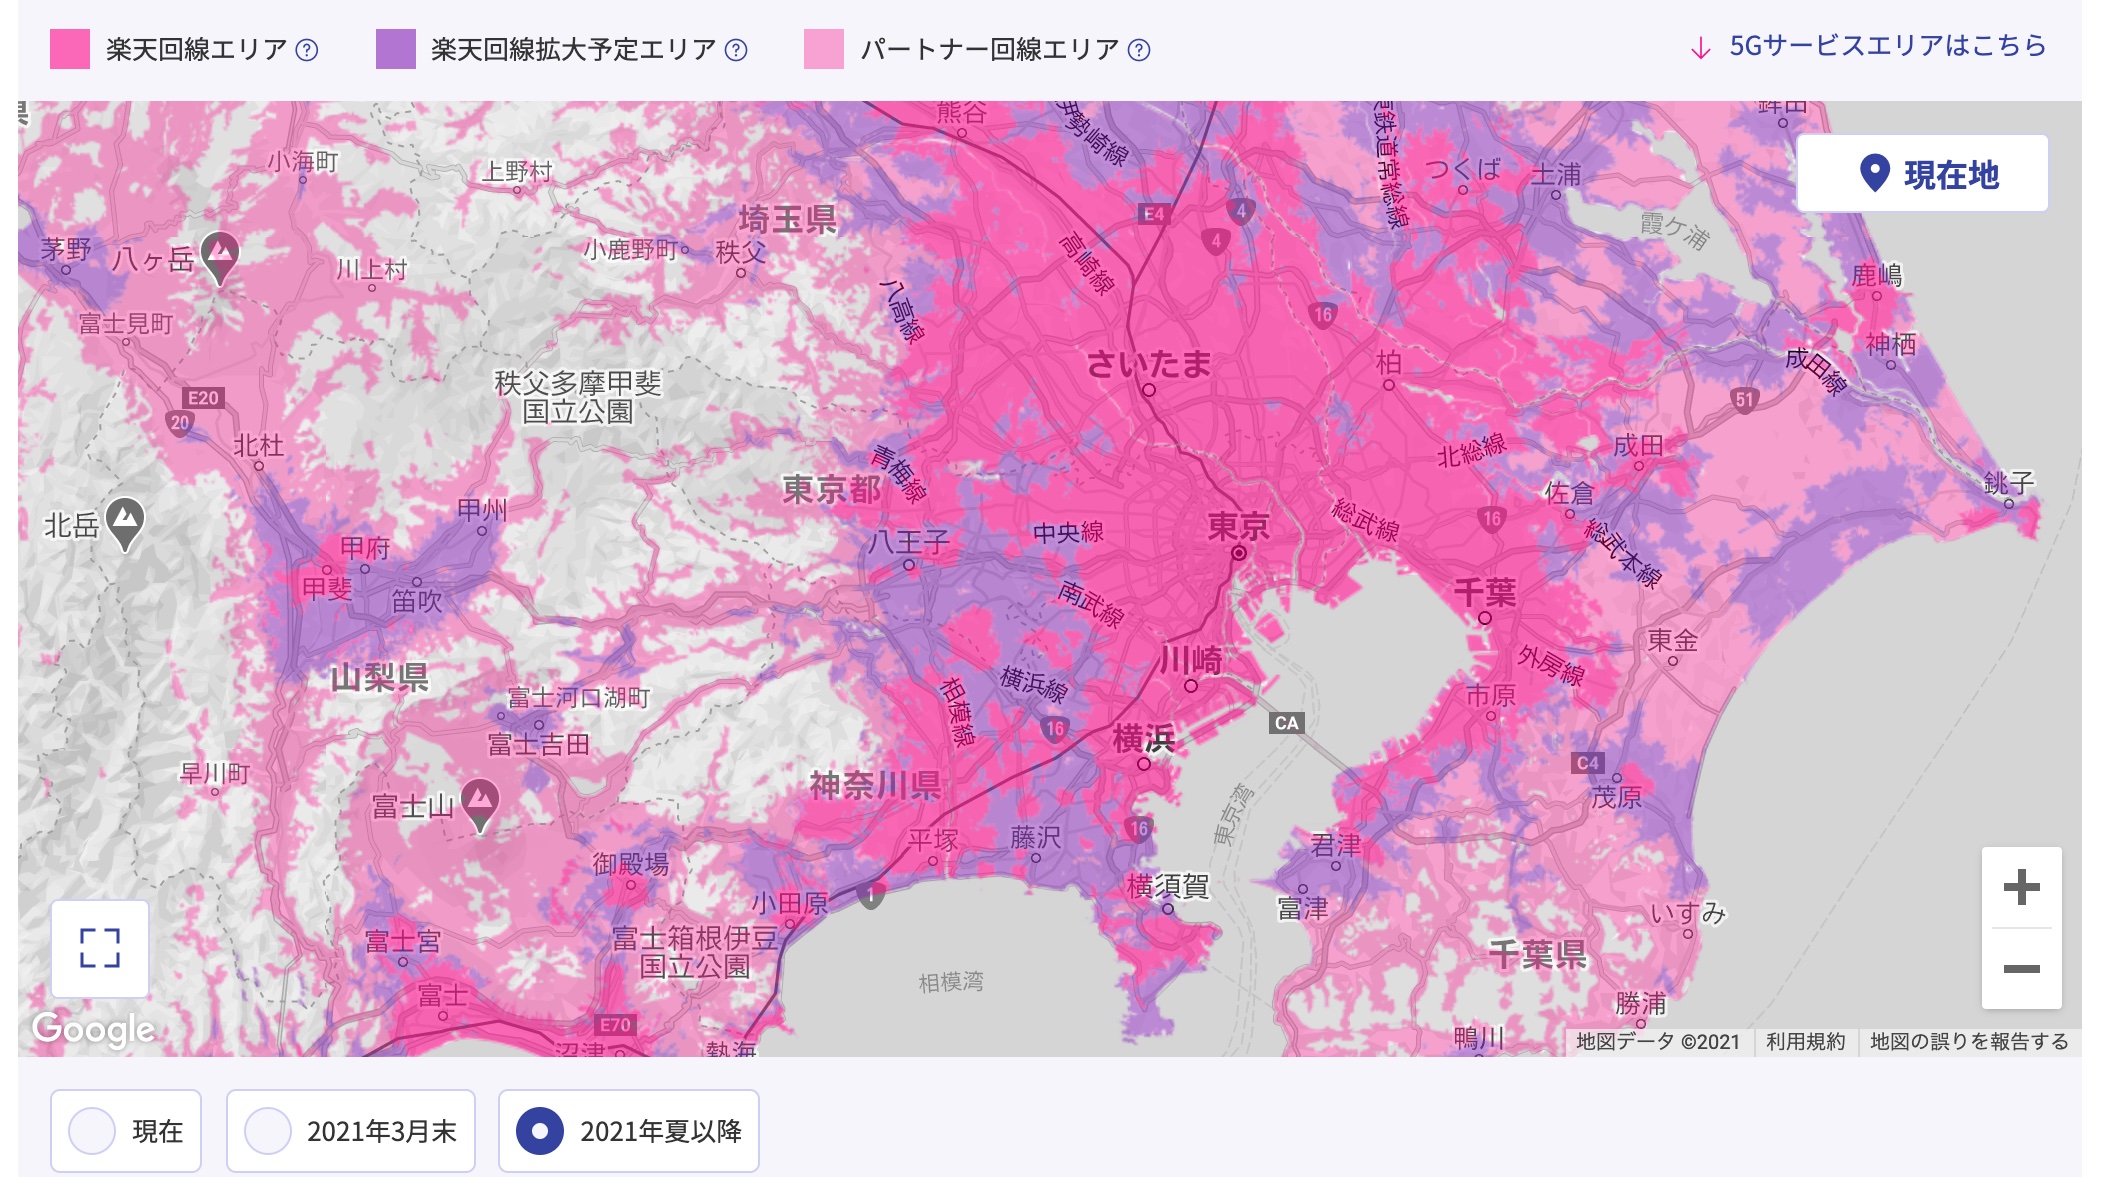 楽天モバイルが4gのエリアマップを更新 東京都小平市や神奈川県厚木市などの地域が追加 3月末および今夏以降の拡大予定も案内 S Max